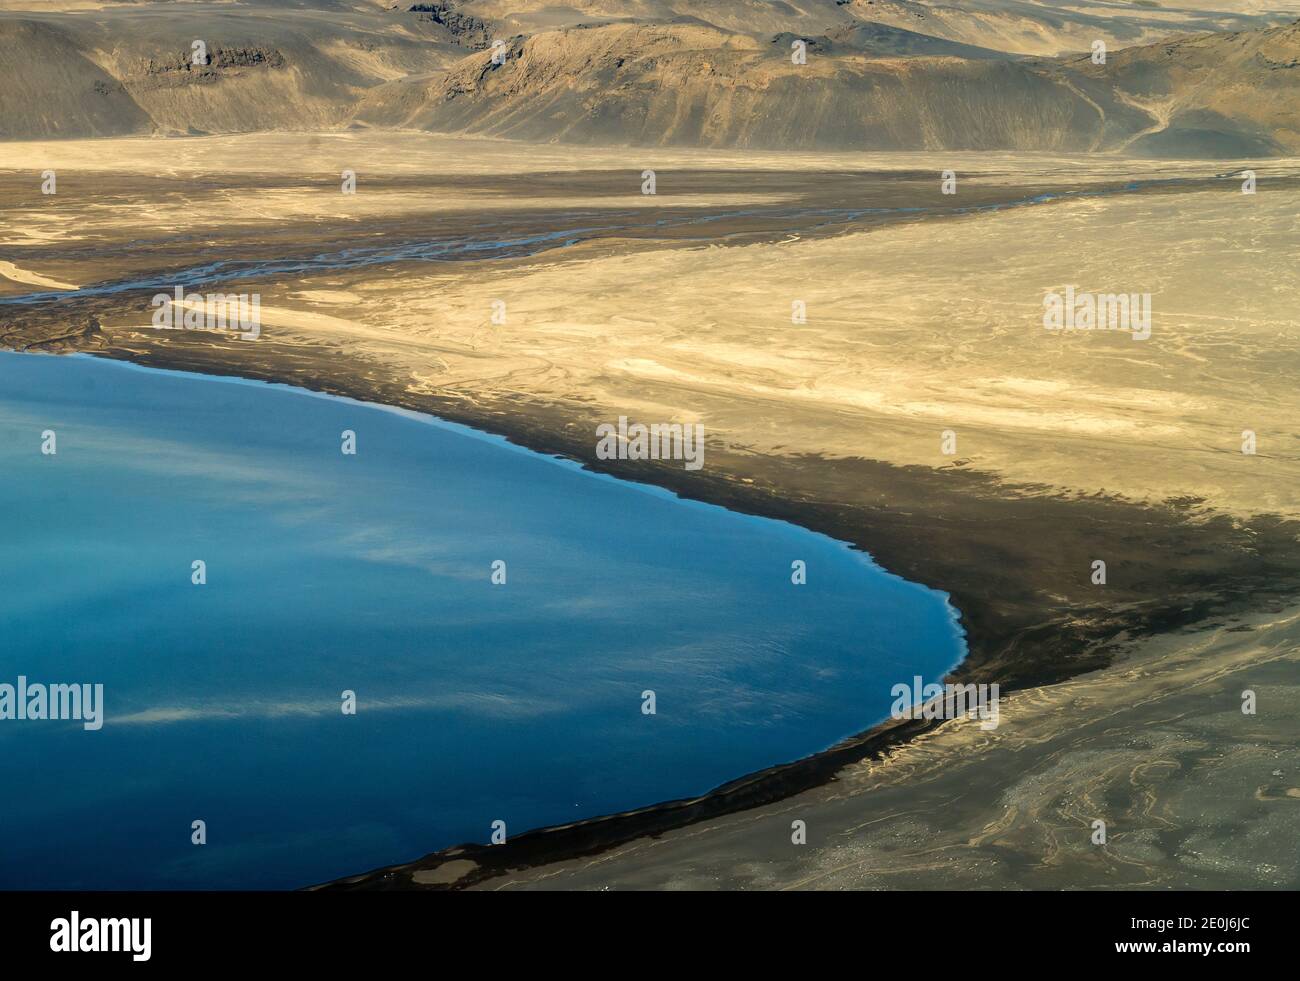 Fotografia aerea del paesaggio islandese catturata dall'aereo turistico Foto Stock